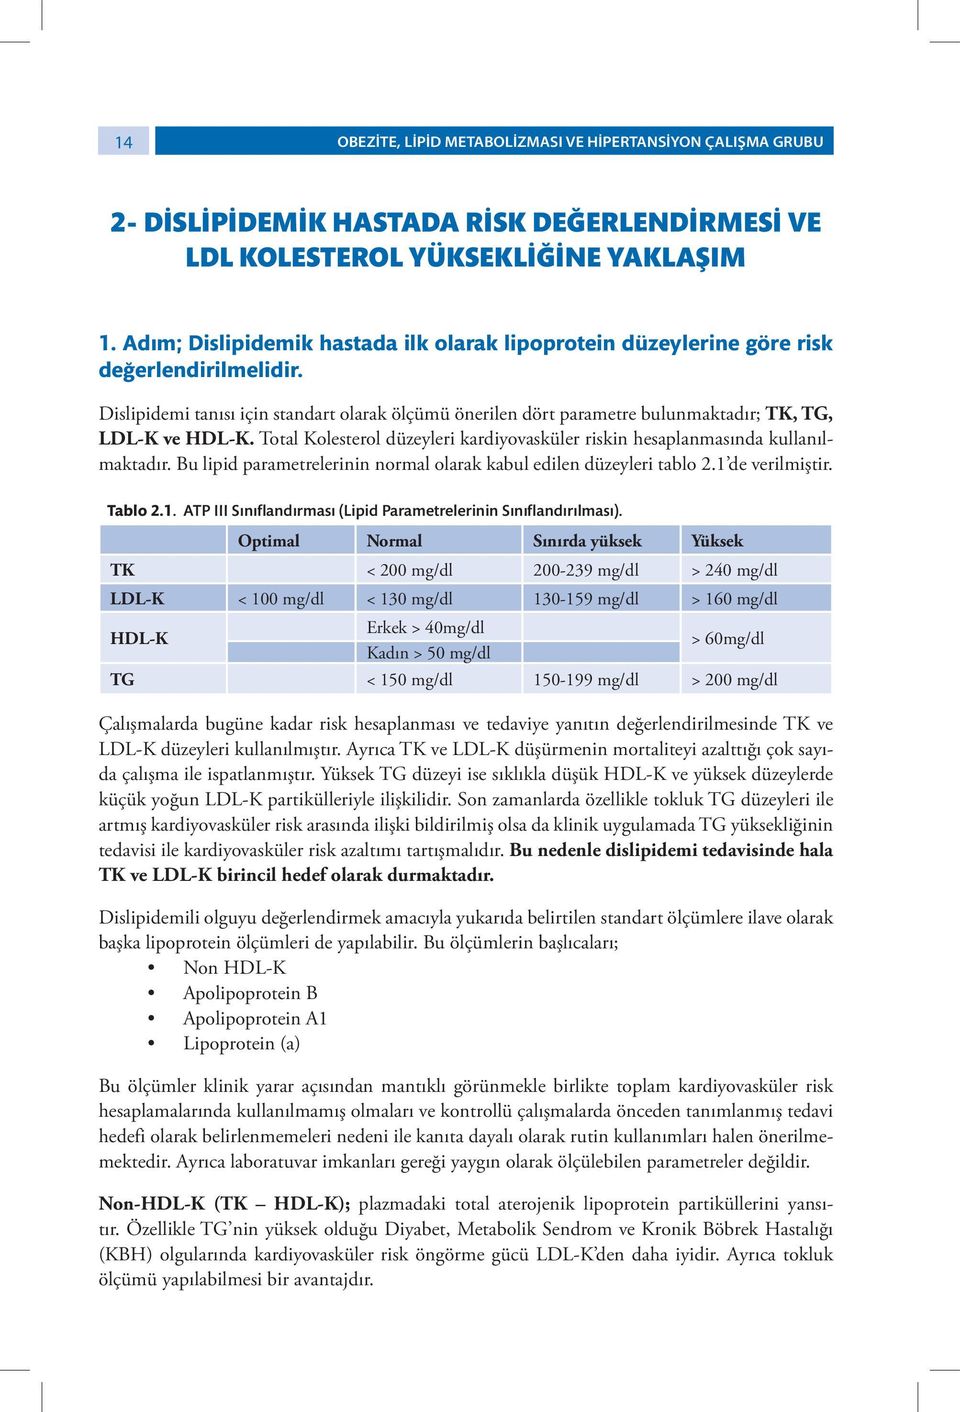 Dislipidemi tanısı için standart olarak ölçümü önerilen dört parametre bulunmaktadır; TK, TG, LDL-K ve HDL-K. Total Kolesterol düzeyleri kardiyovasküler riskin hesaplanmasında kullanılmaktadır.